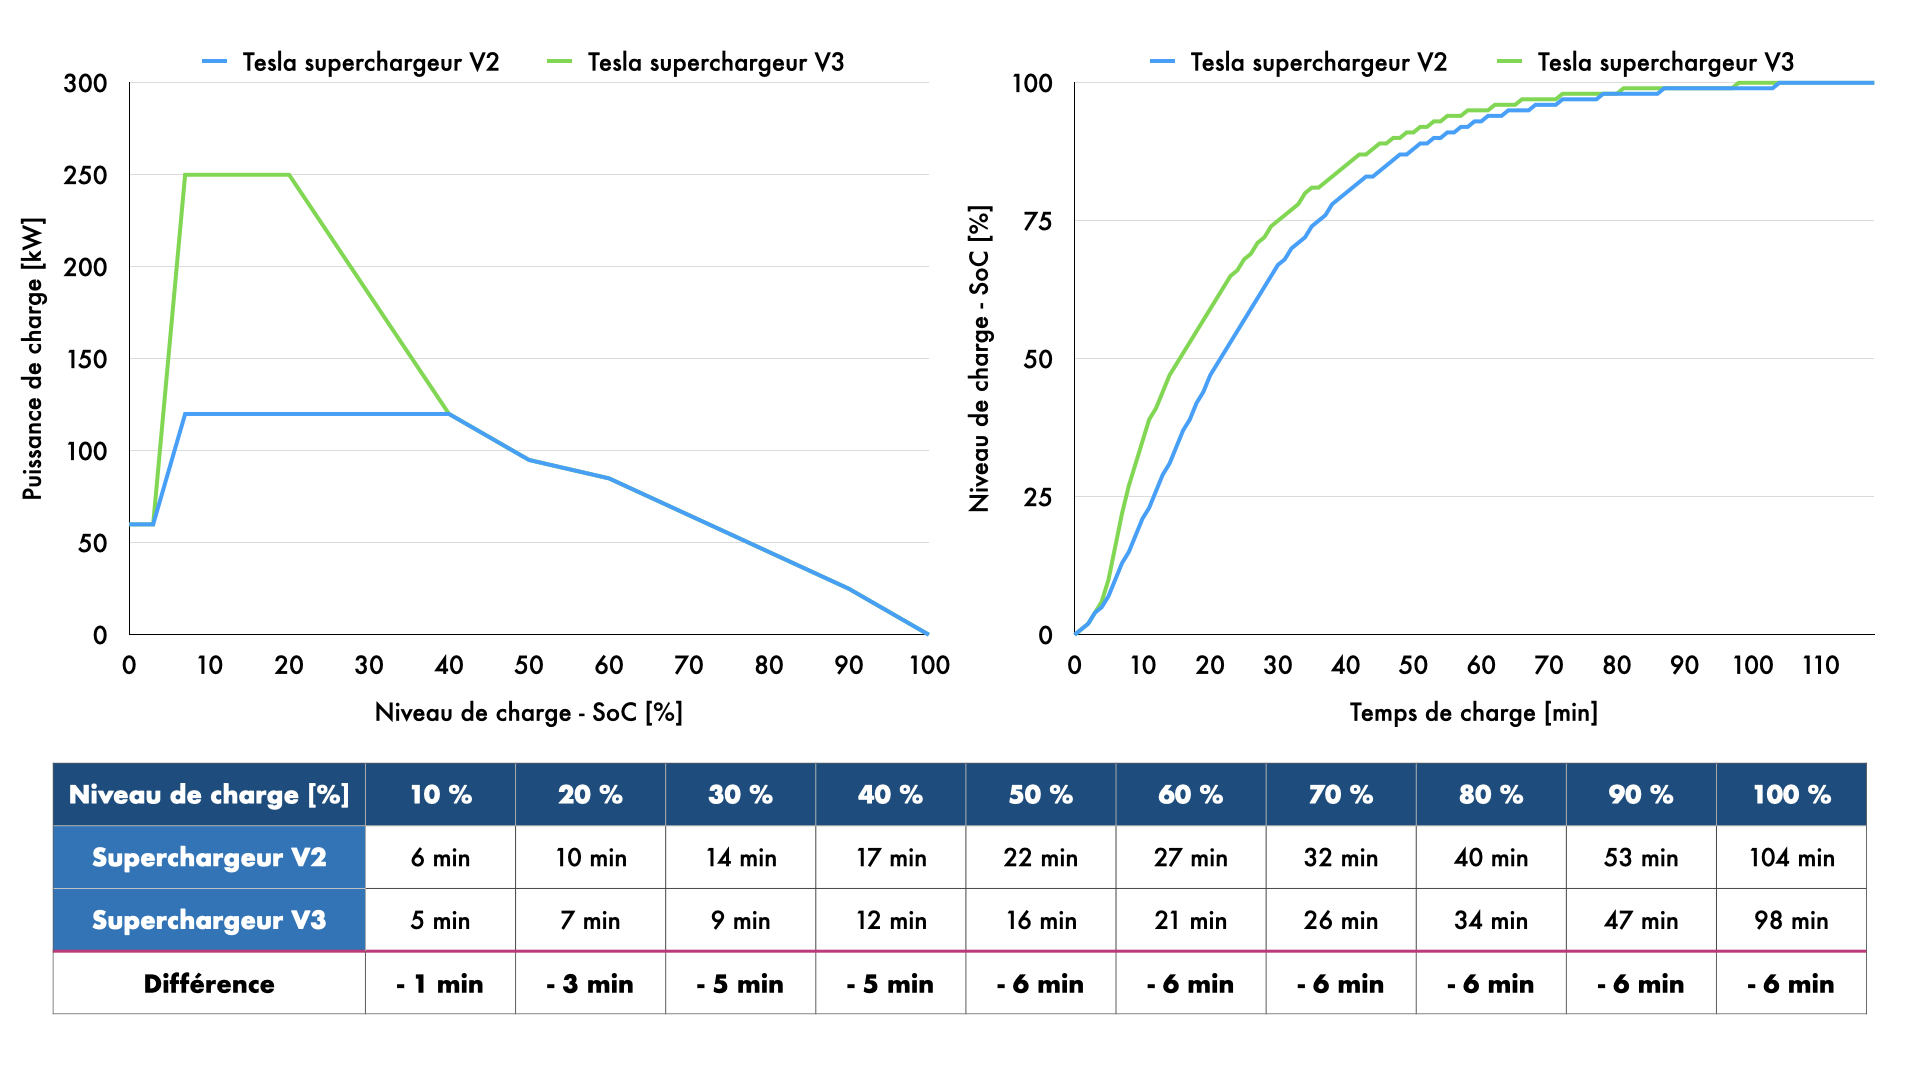 Puissance et temps de charge Tesla Model 3 - Superchargeur V2 et Superchargeur V3